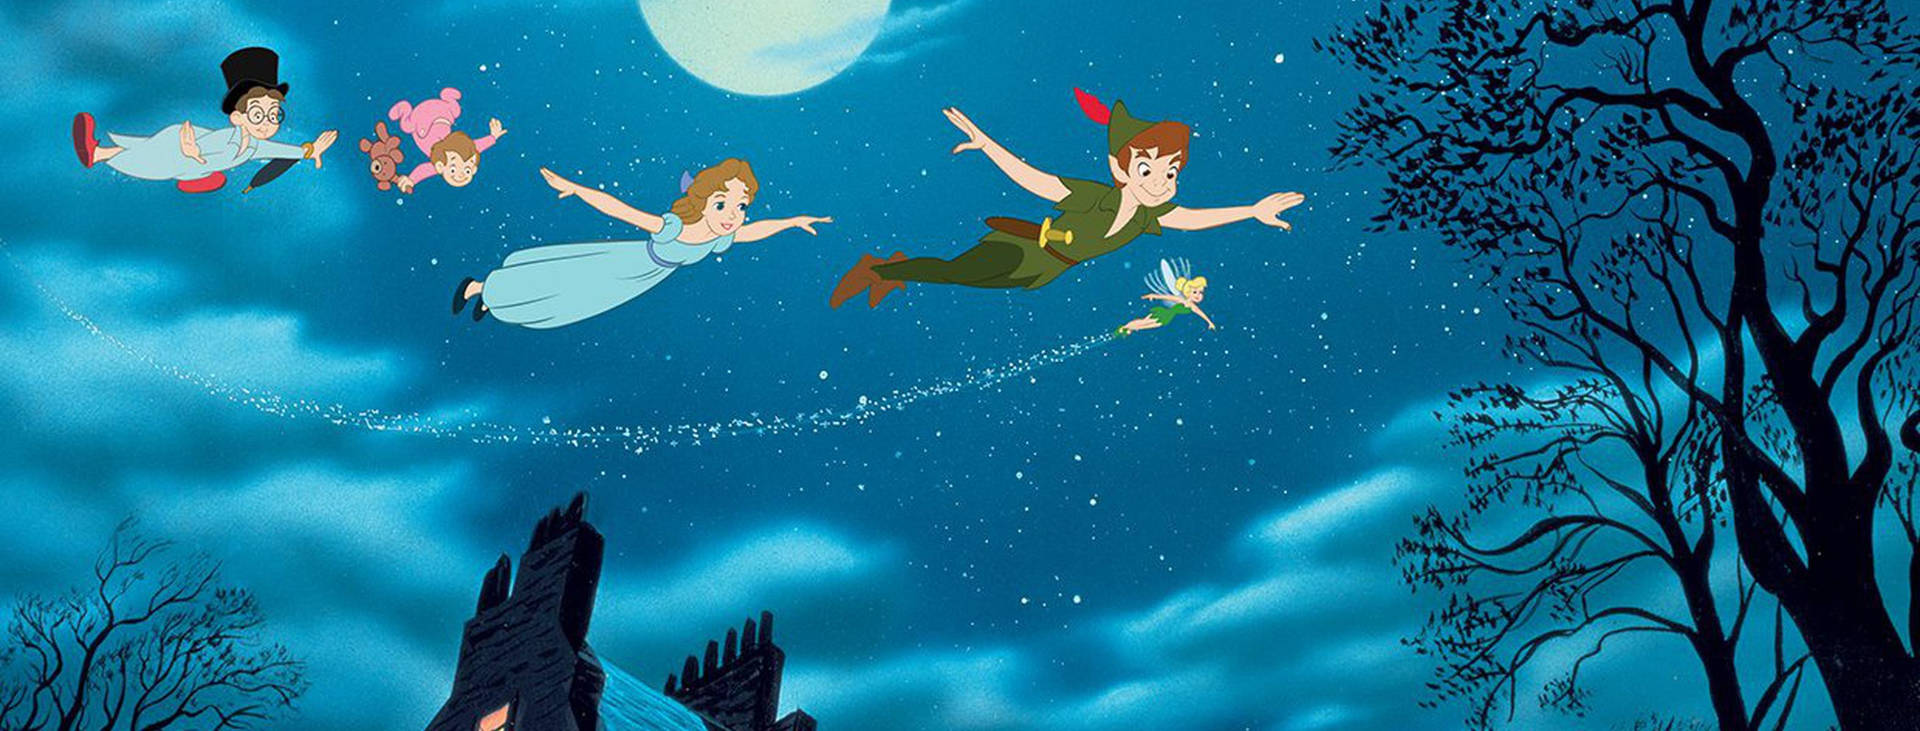 Tinker Bell og Peter Pan flyver i den magiske himmel Wallpaper